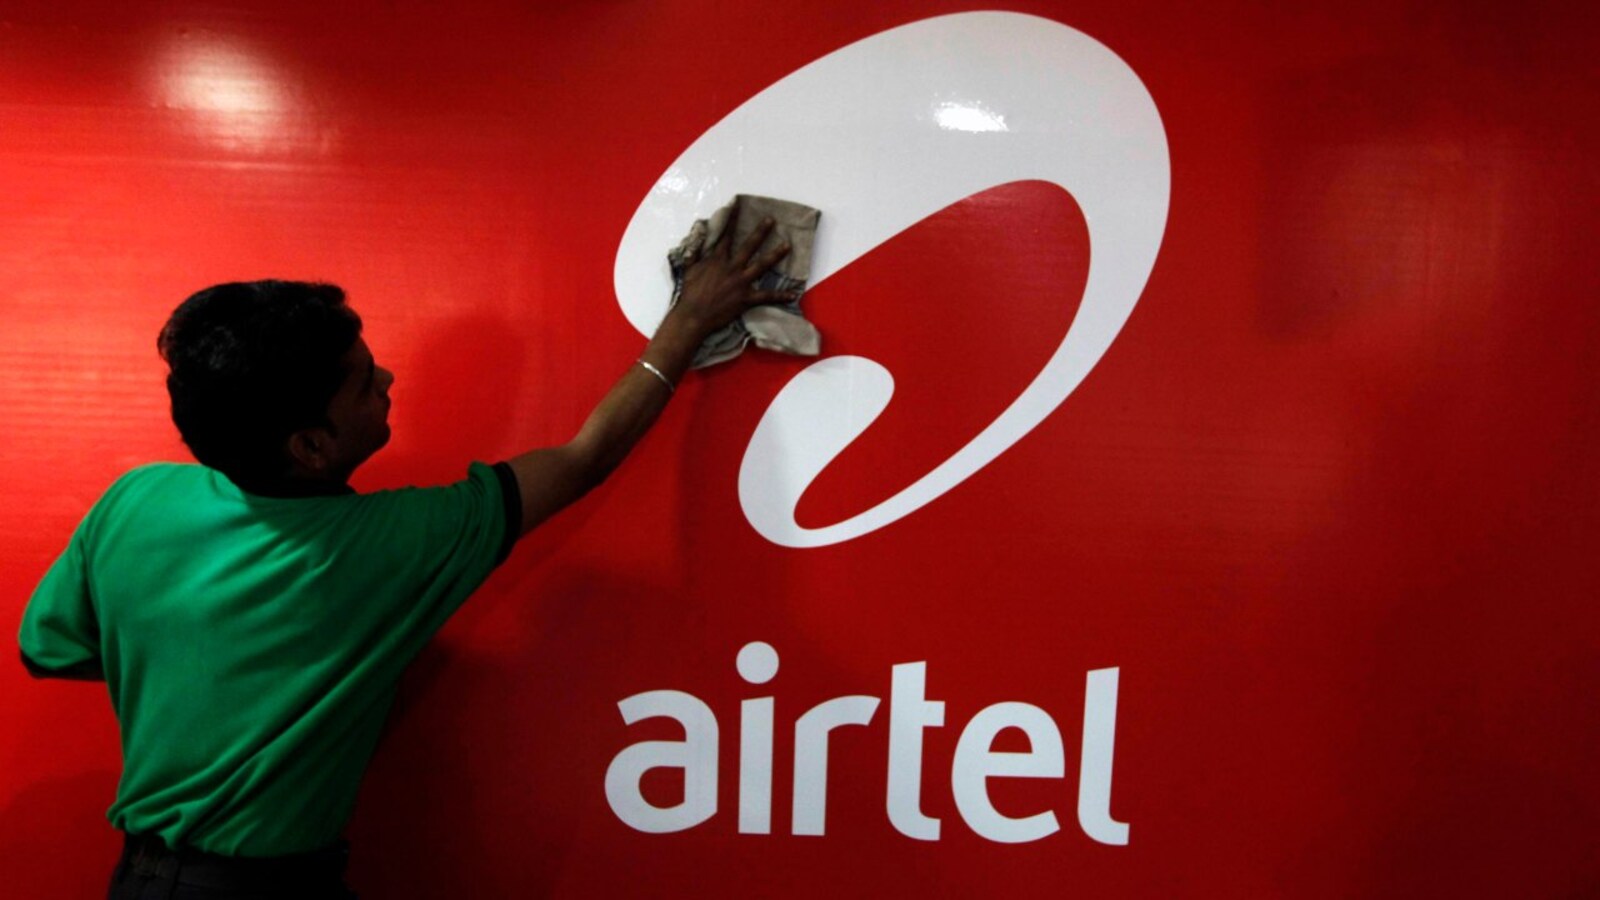 Bharti Airtel acquires 97 MHz spectrum through auction for Rs 6,857 cr